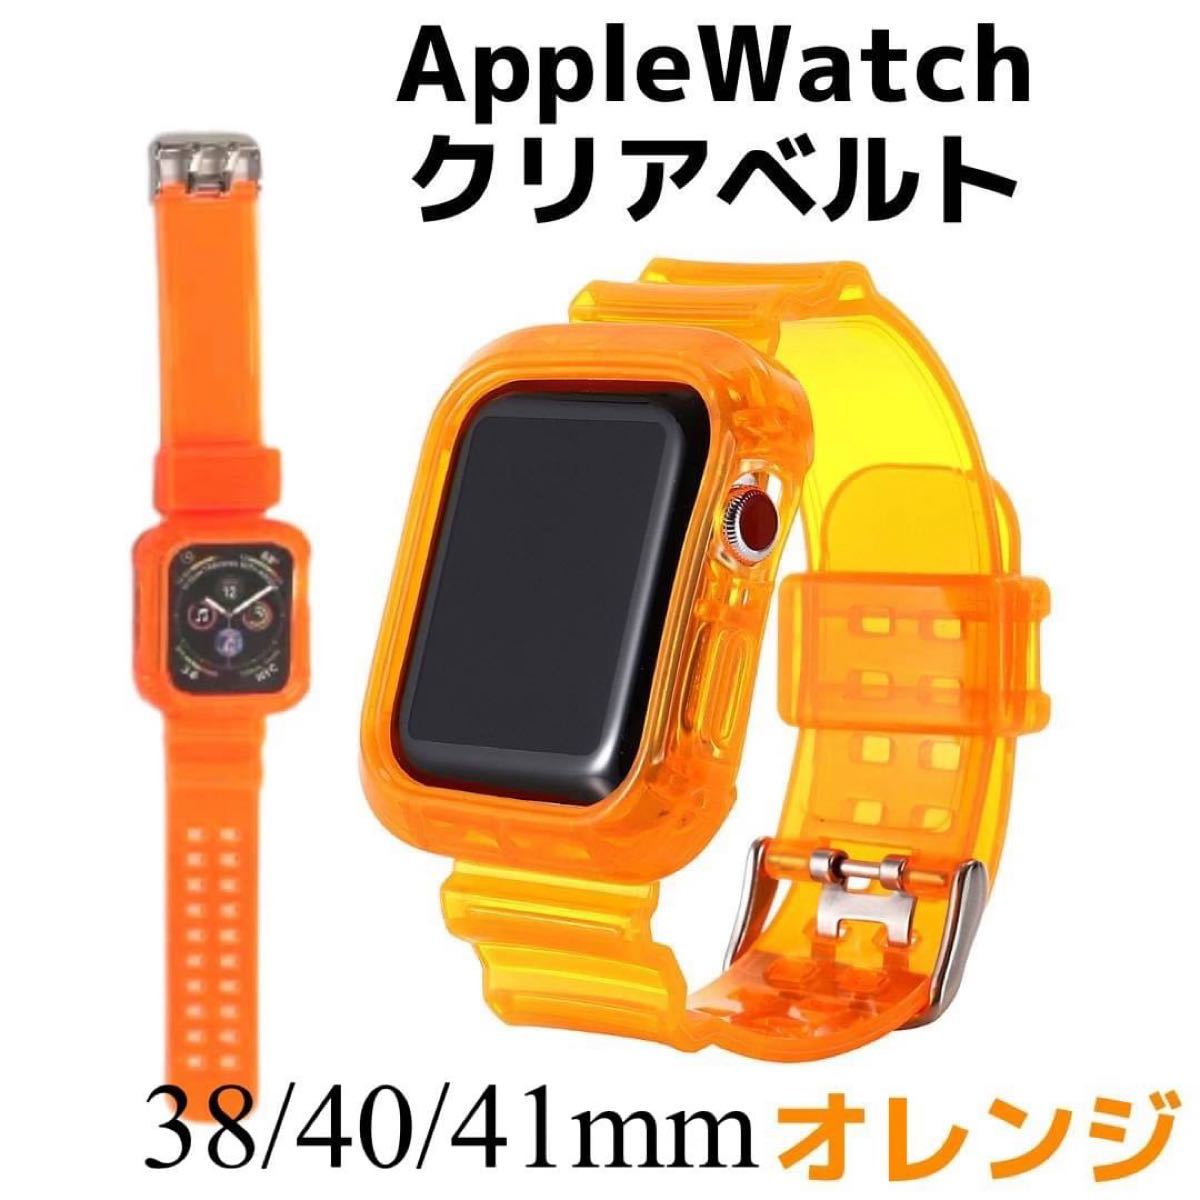 Applewatch バンド 38 40 41mm オレンジ カバーバンド - その他